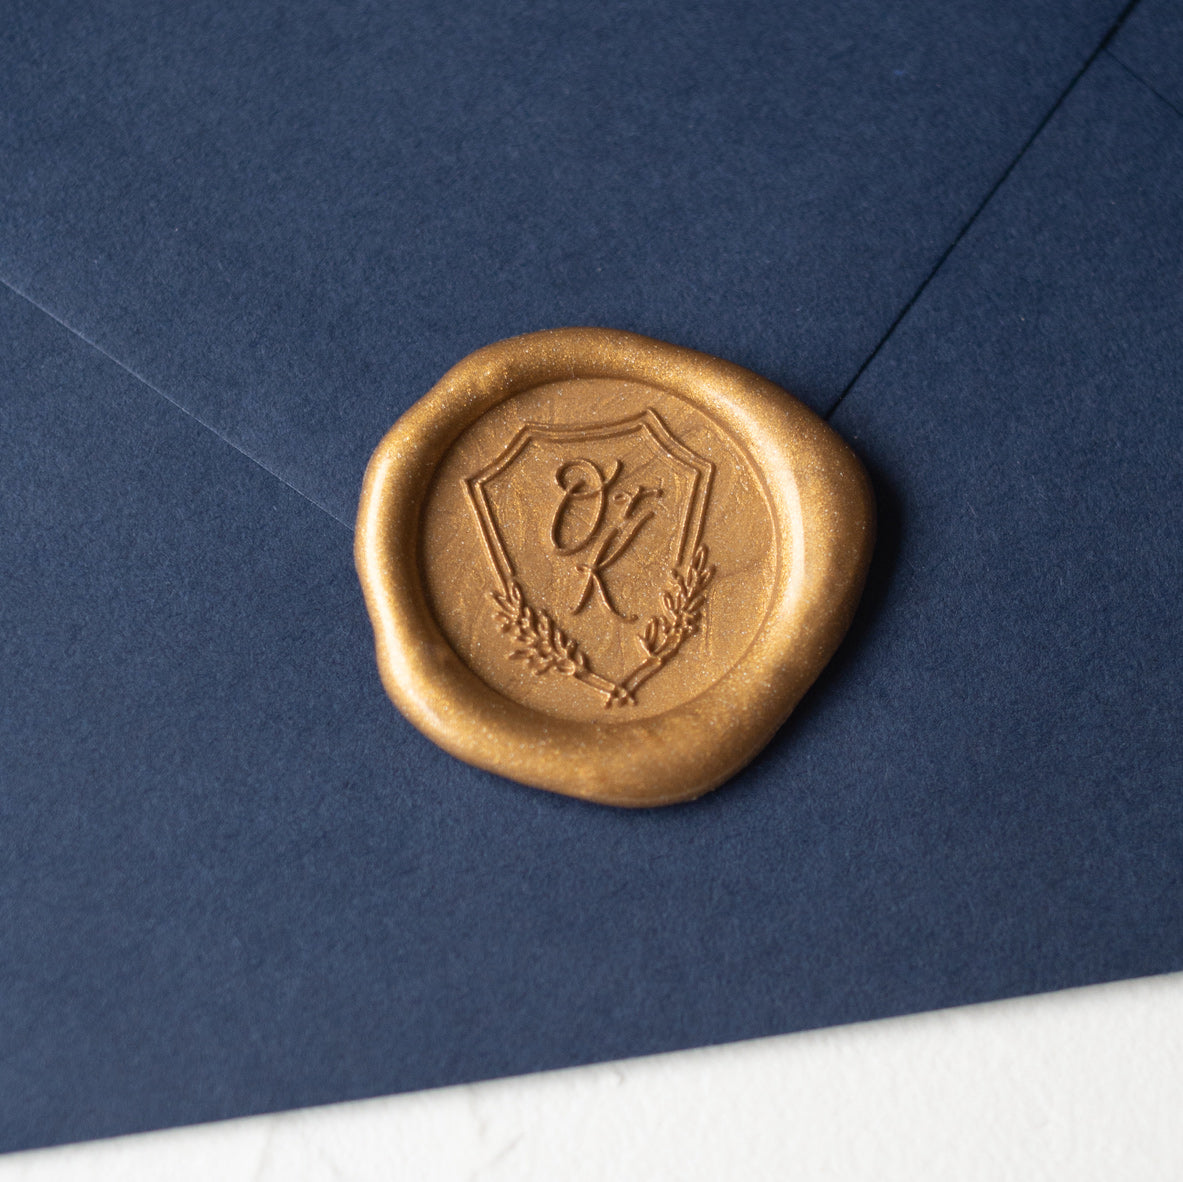 Bespoke Monogram Wax Seal Stamp